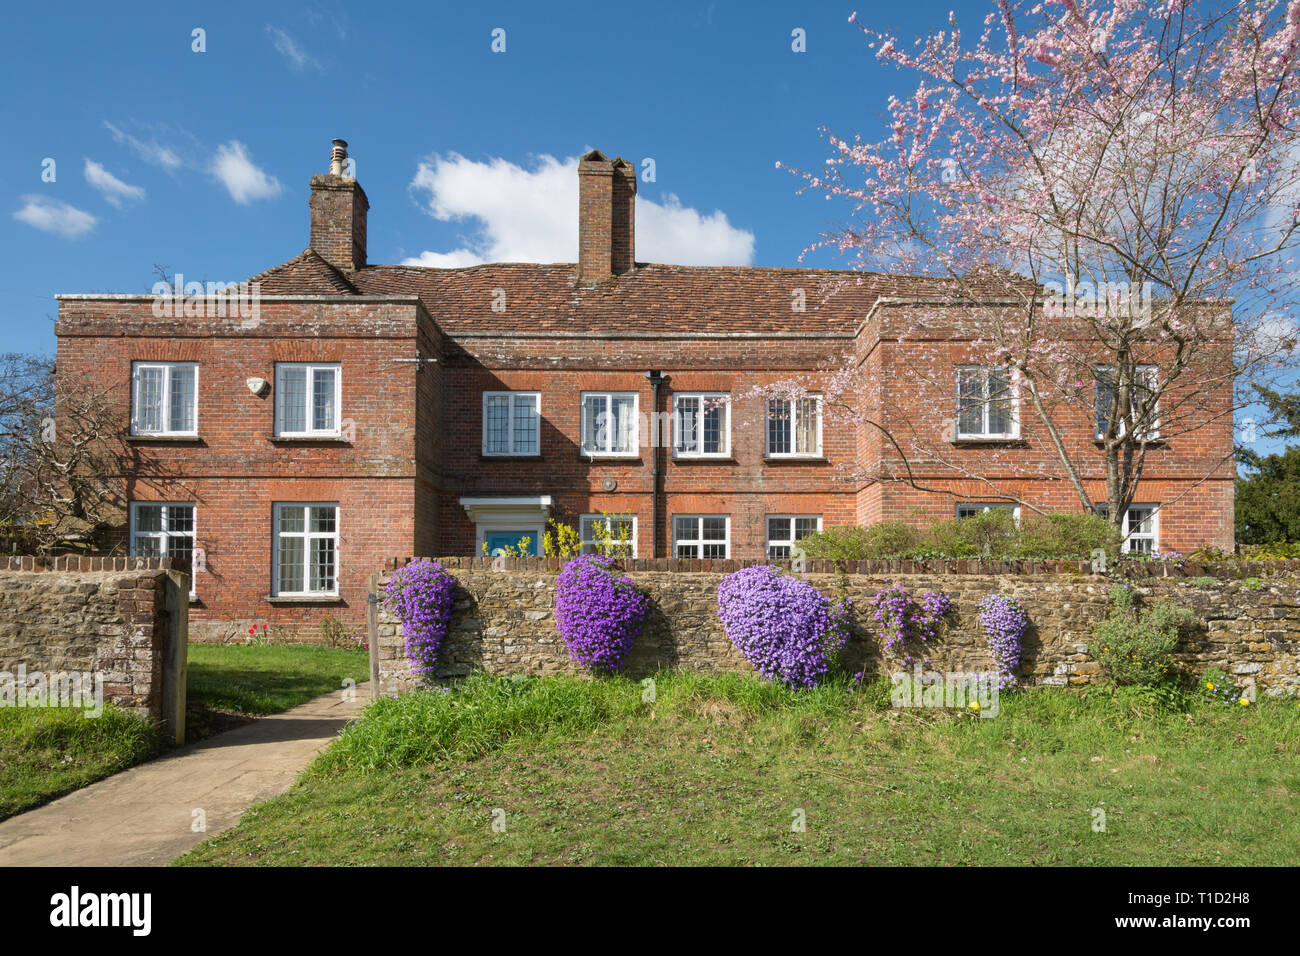 L'Historic Hill Farm House Edificio nel villaggio di Thursley, Surrey, Regno Unito, su una soleggiata giornata di primavera con fiore rosa tree e viola aubretia fiori Foto Stock